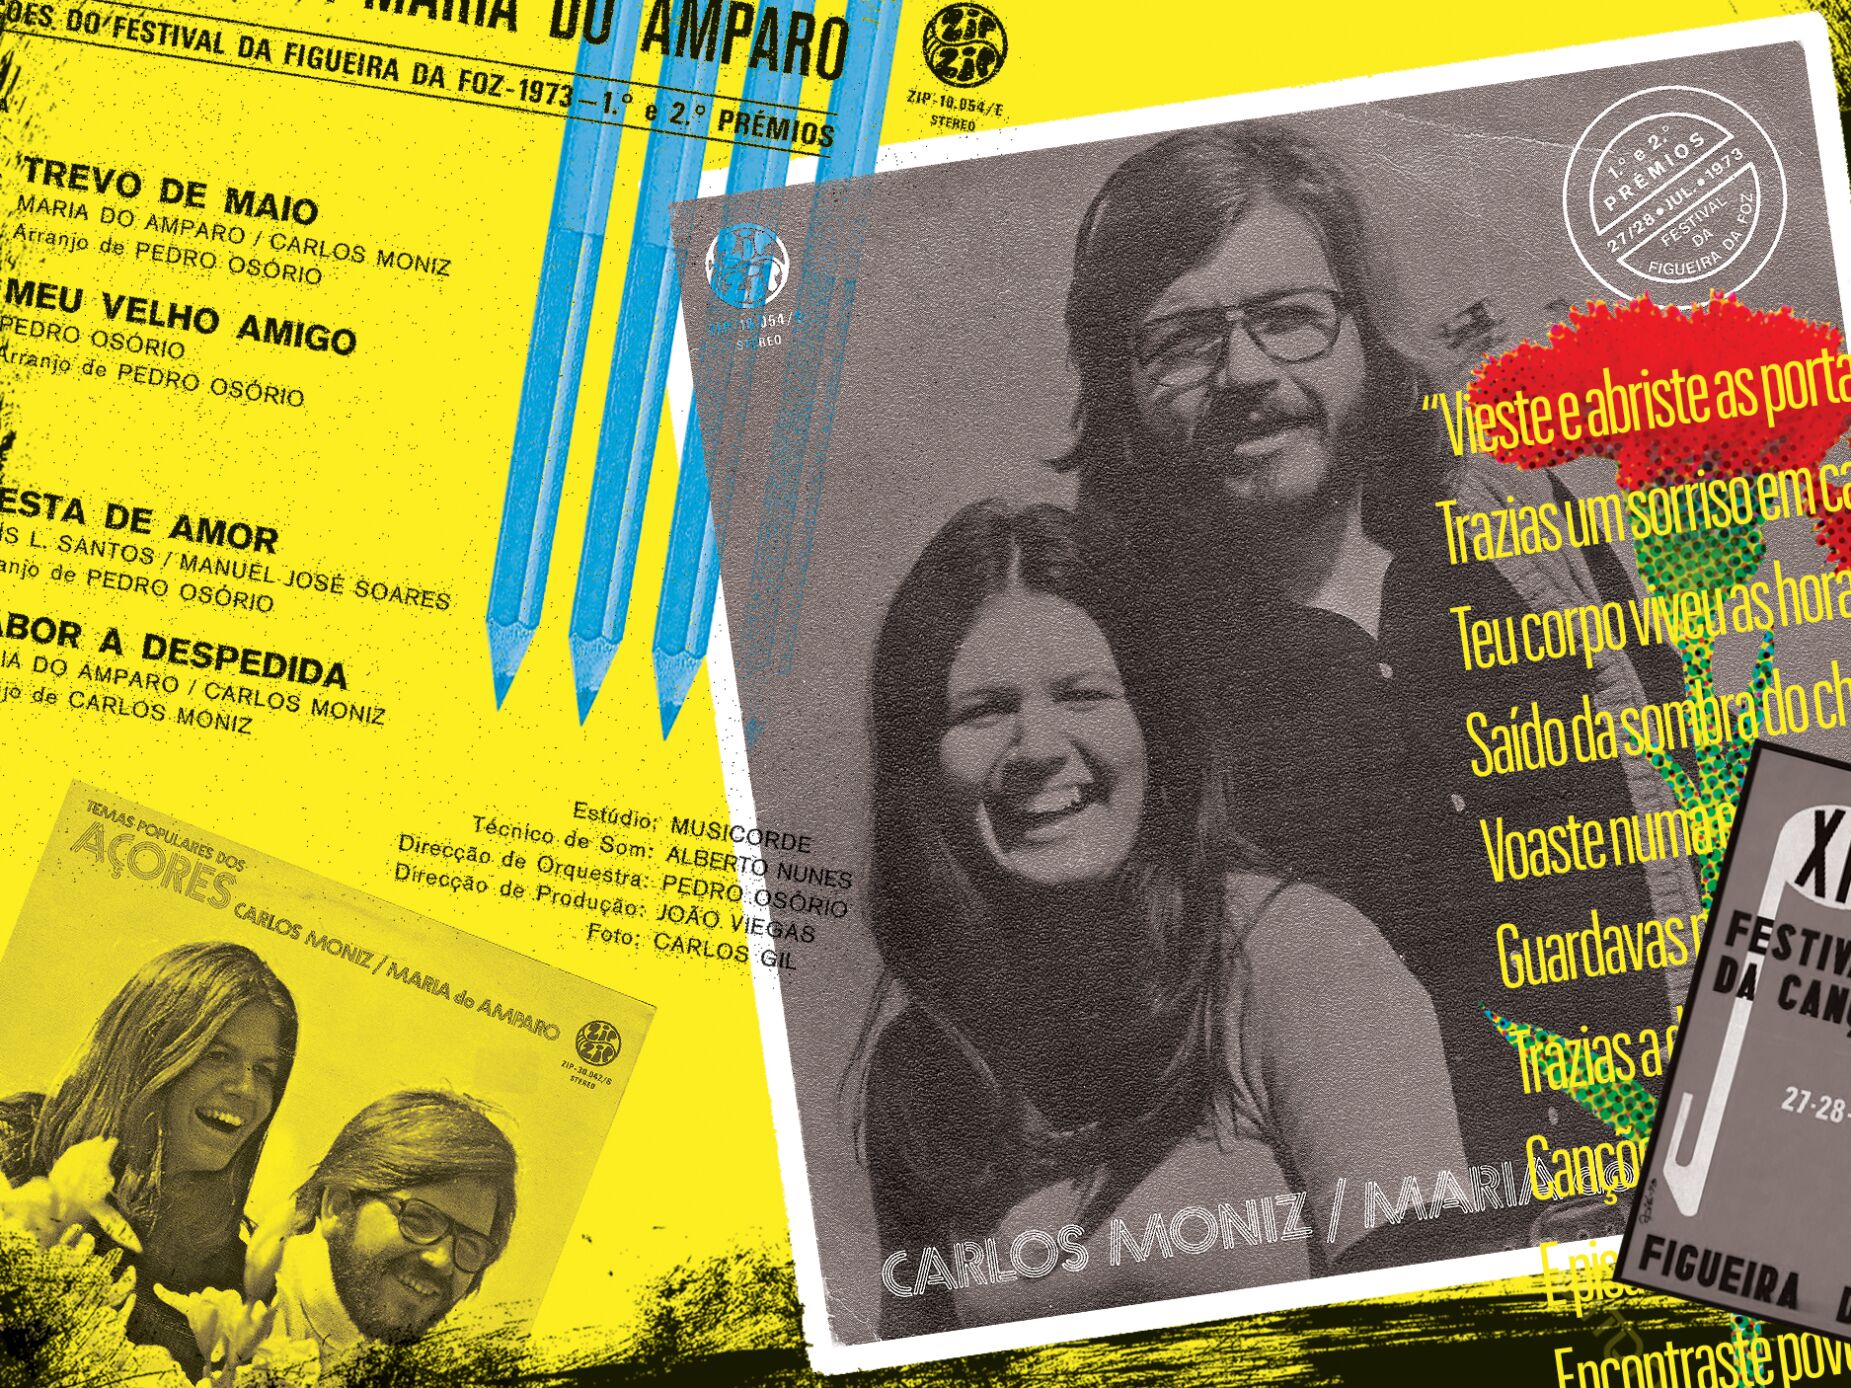 #44 “Trevo de Maio” (Maria do Amparo - Carlos Alberto Moniz), Carlos Alberto Moniz & Maria do Amparo, 1973